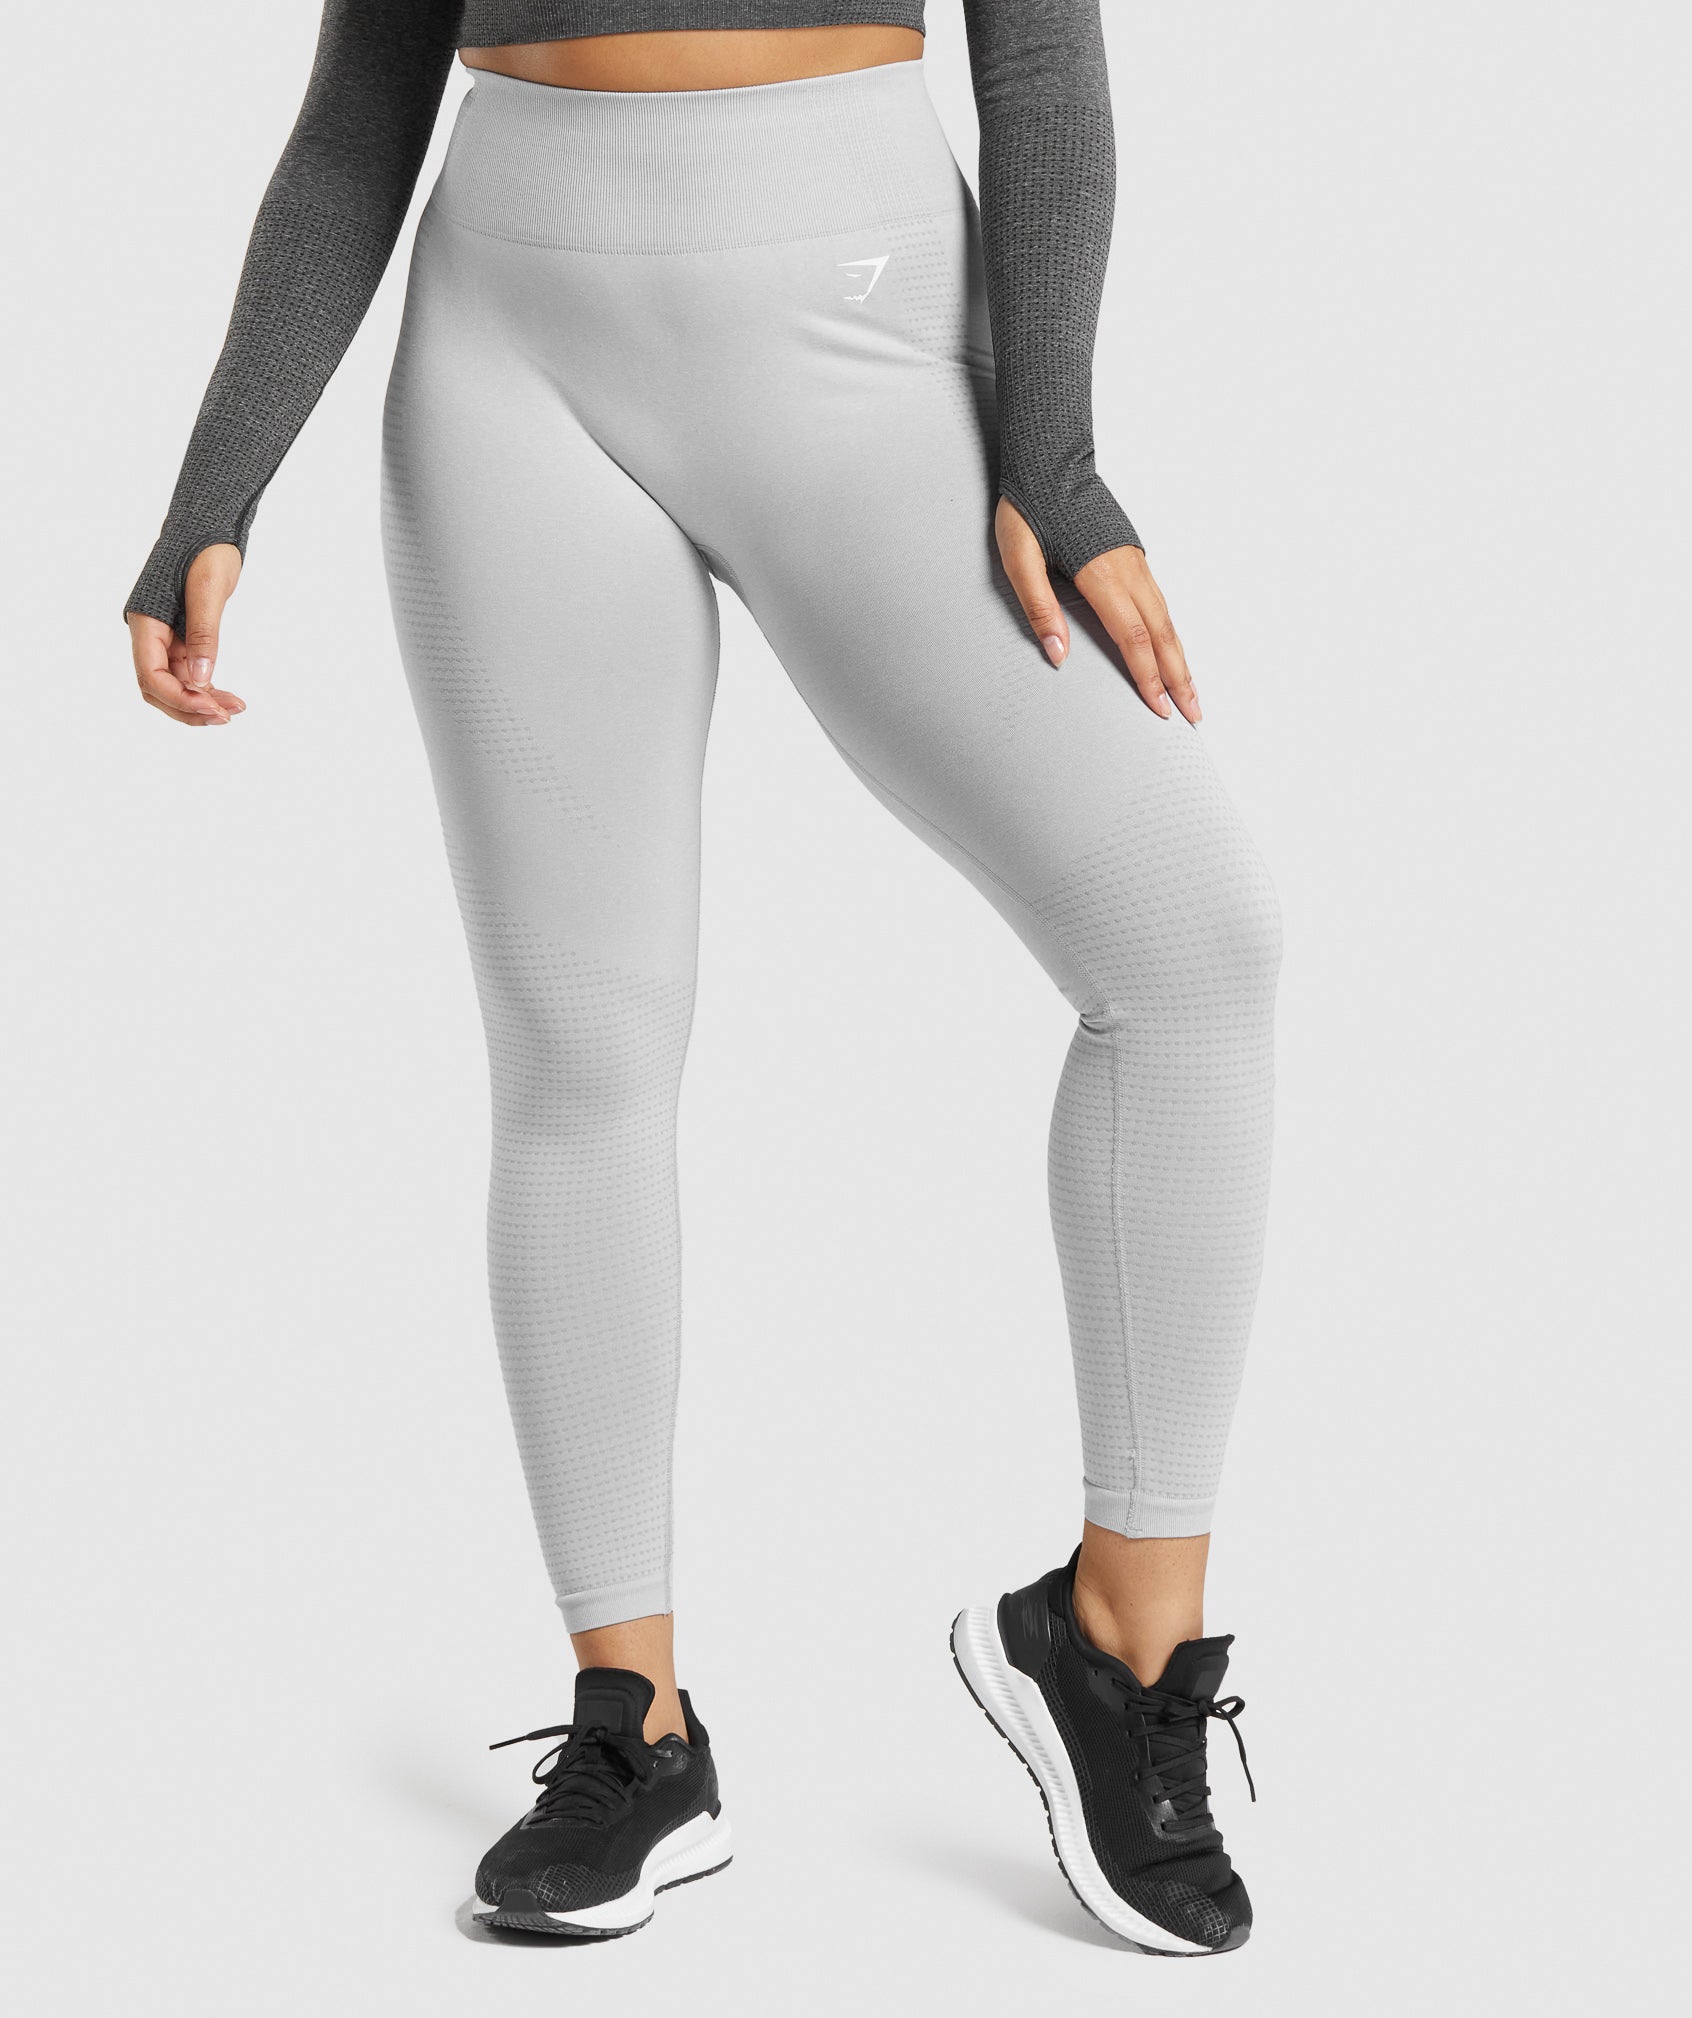 Gymshark Vital Seamless Leggings Gray Size XS - $23 (54% Off Retail) - From  Denise